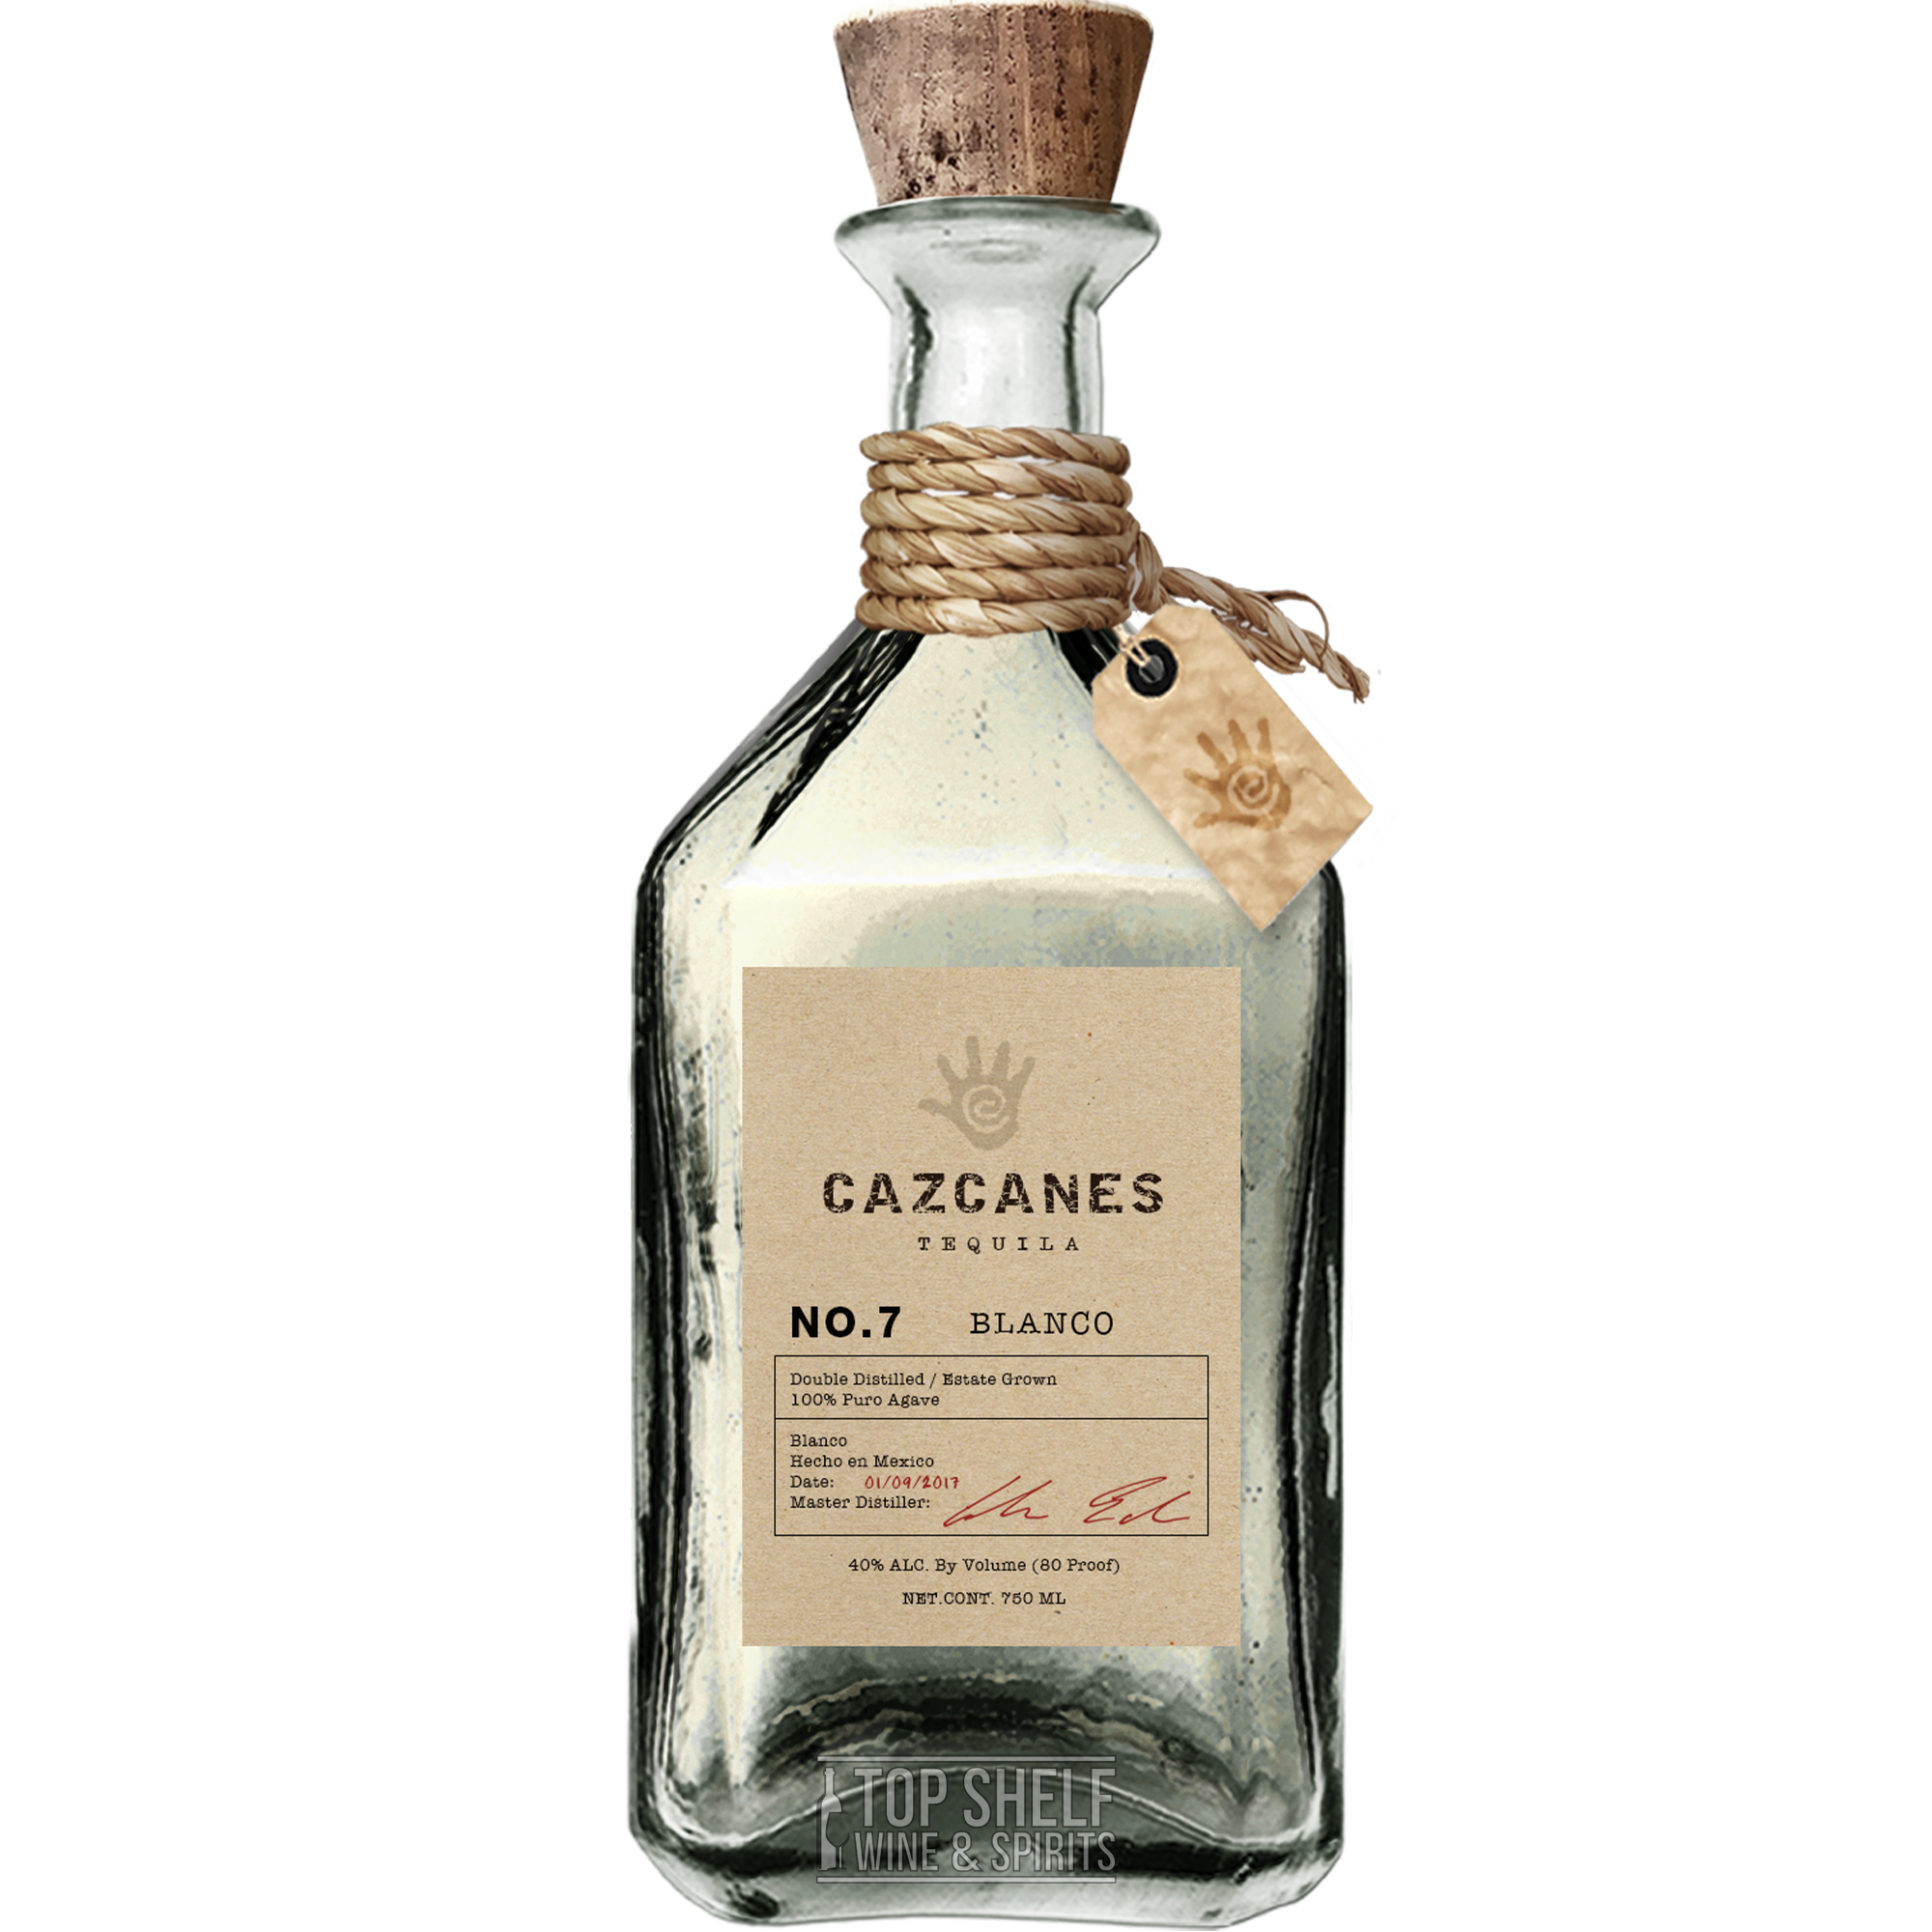 Cazcanes No.7 Blanco Tequila